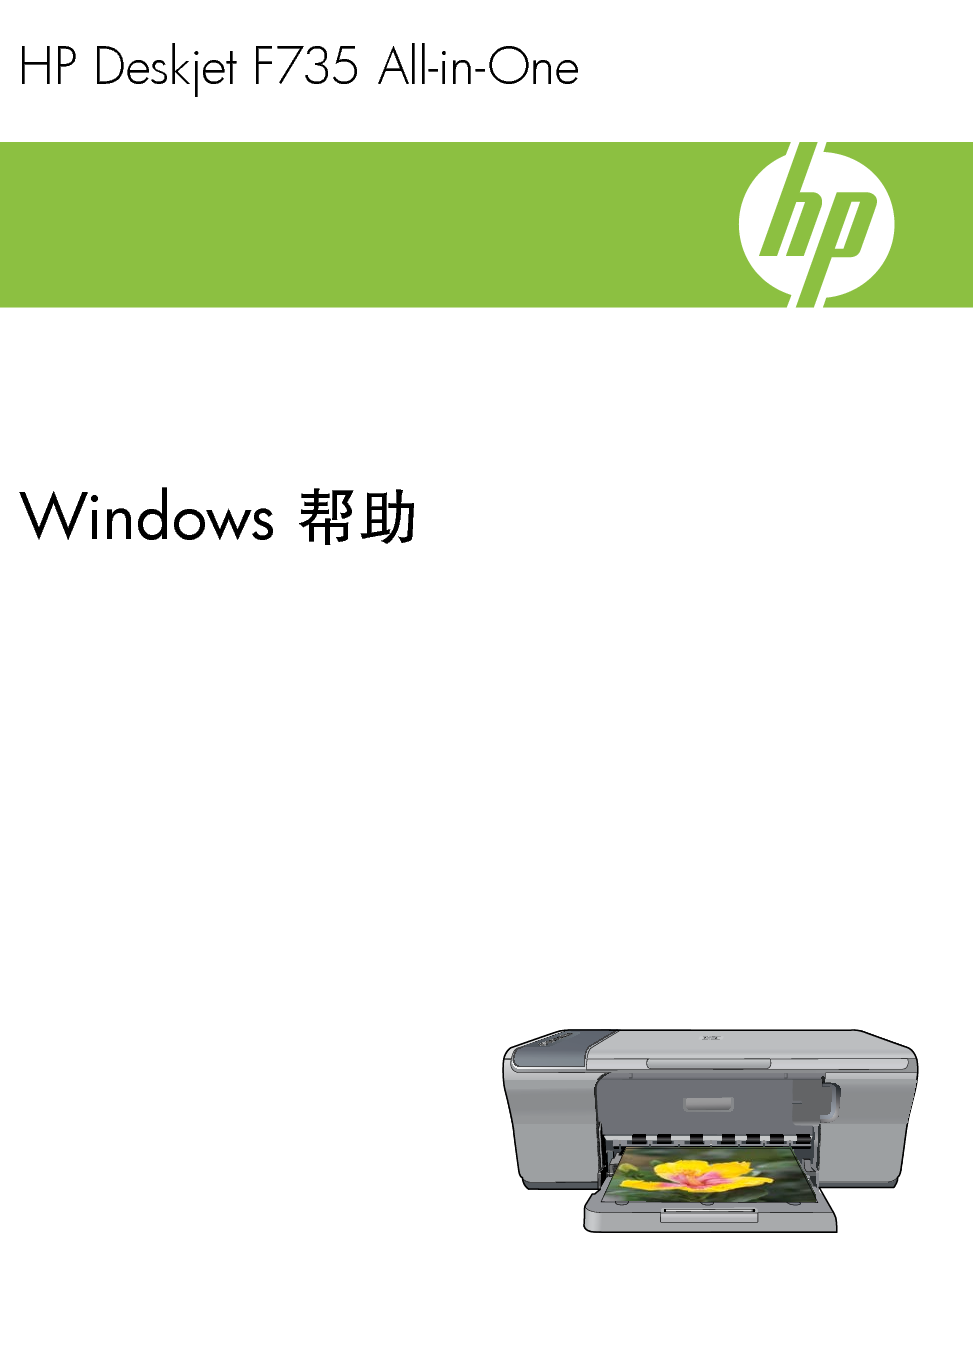 惠普 HP DeskJet F735 Windows 帮助 封面